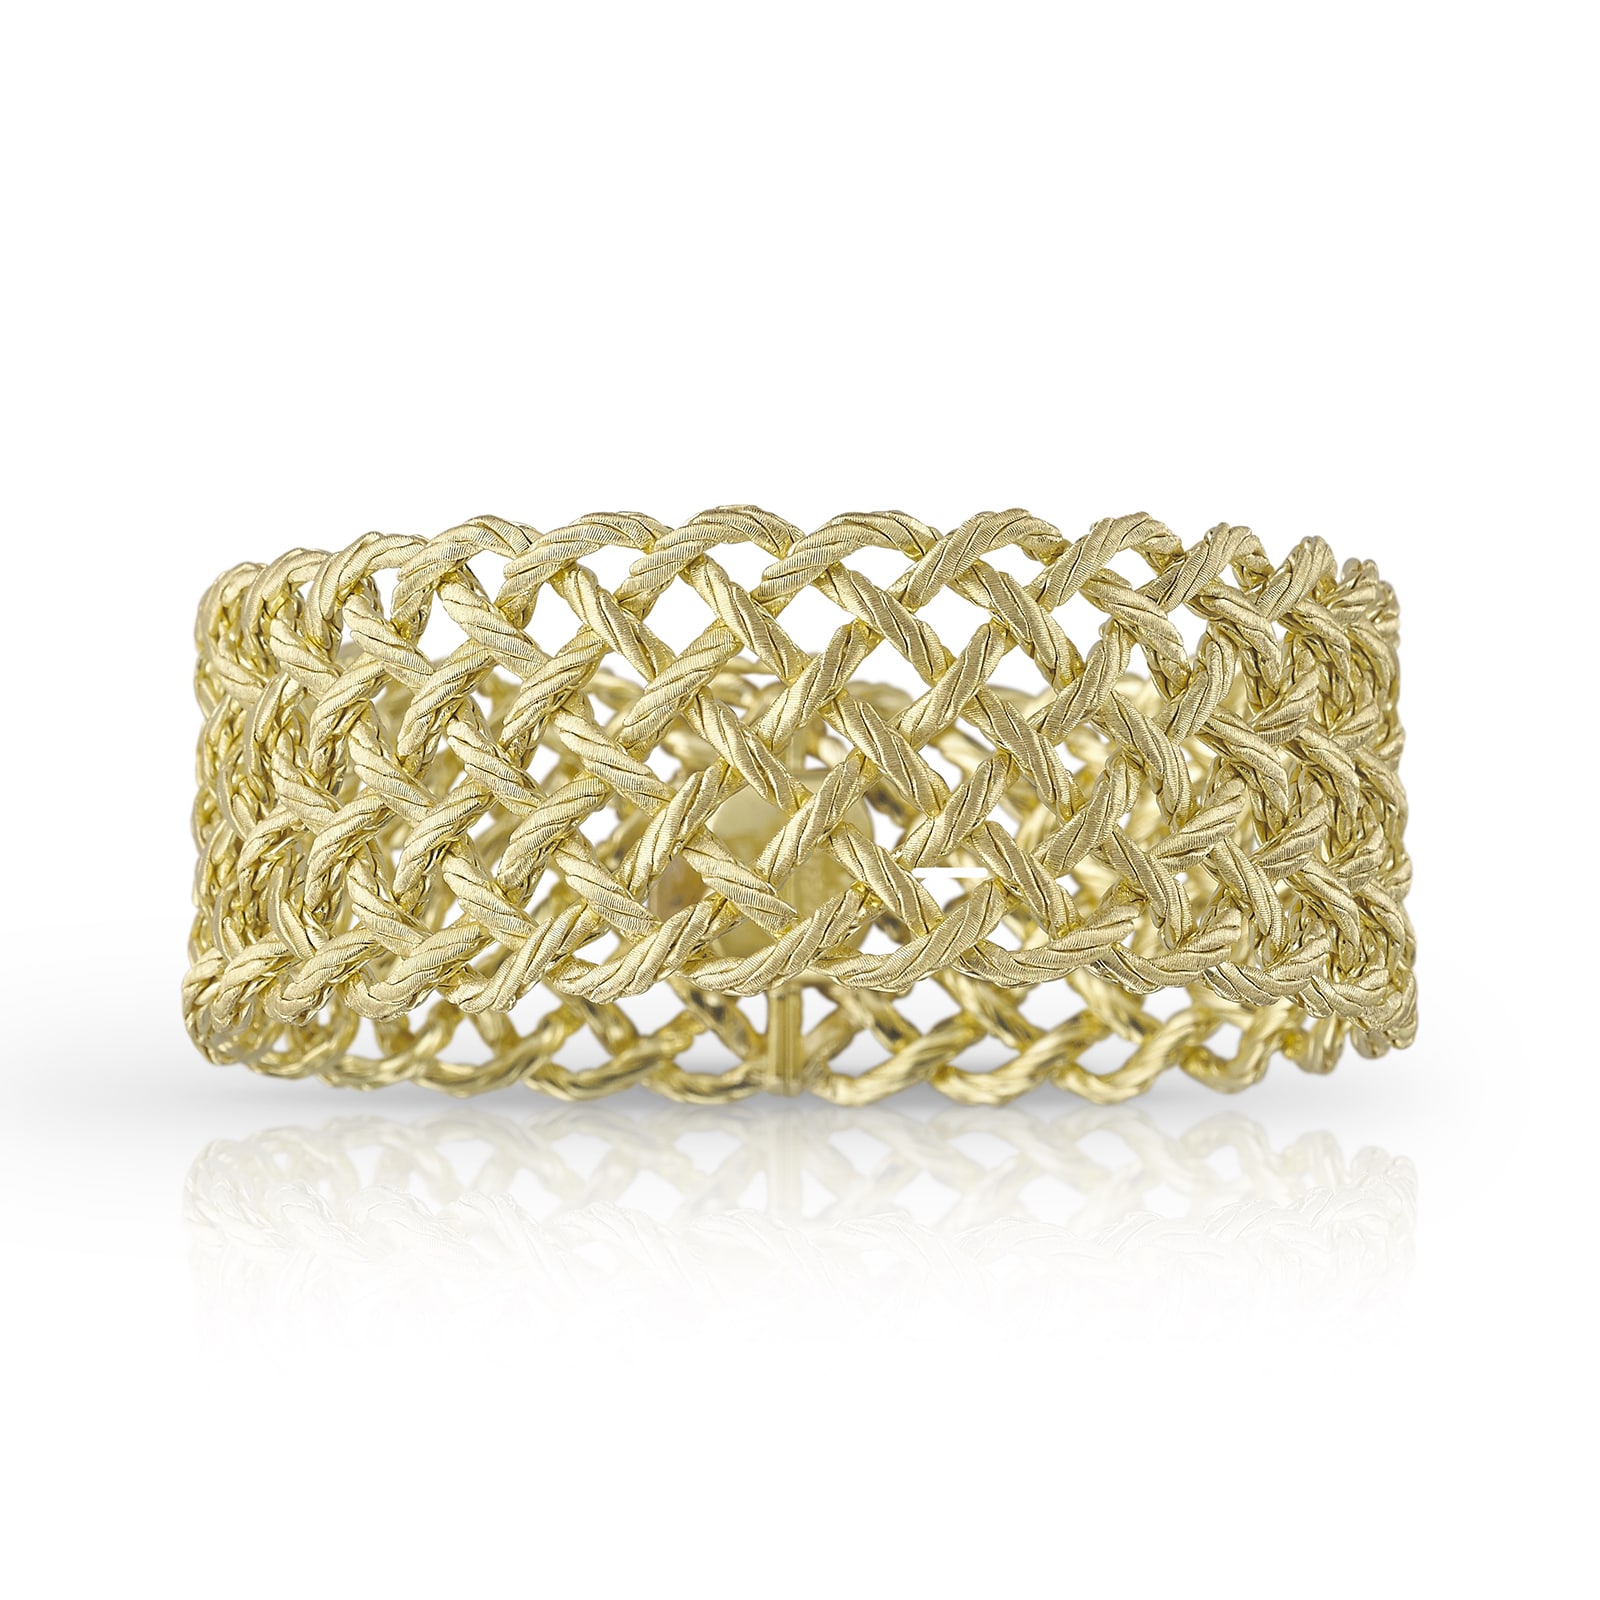 New Gold Bracelet Designs for Men - YouTube | Bracelet designs, Gold  bracelet, Bracelets